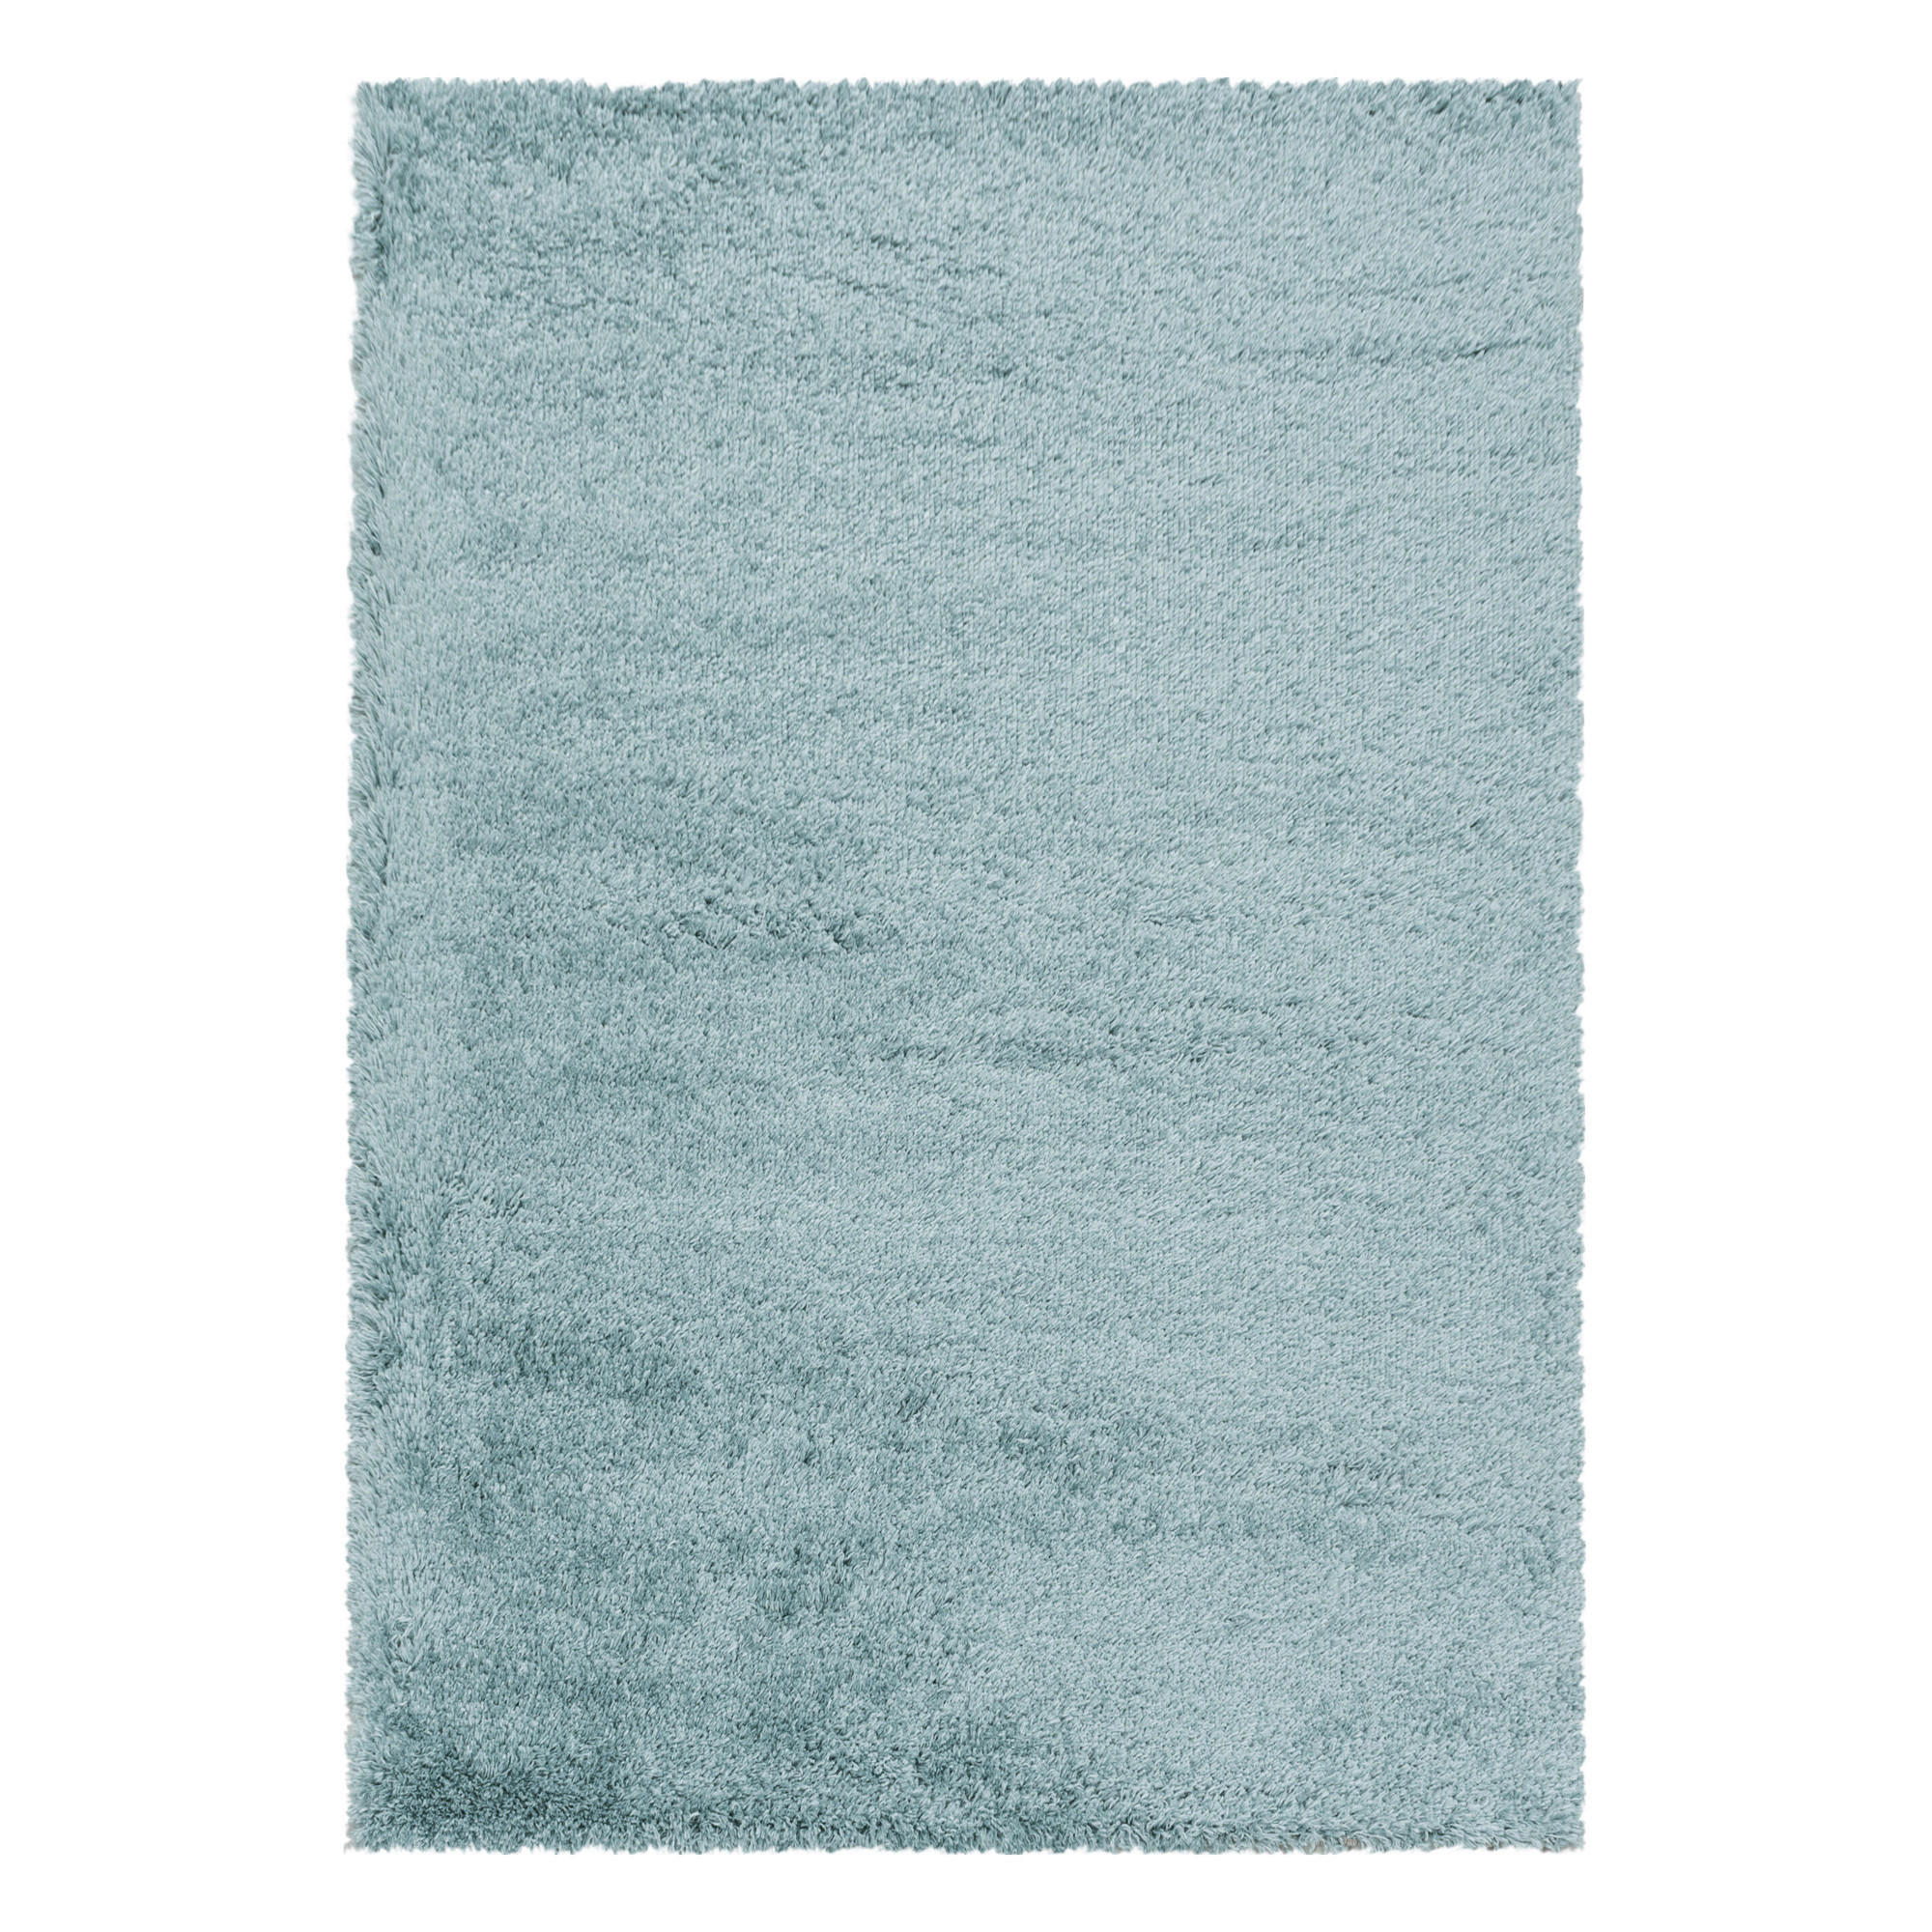 HOCHFLORTEPPICH 60/110 cm Fluffy 3500 Blau  - Blau, Basics, Textil (60/110cm) - Novel